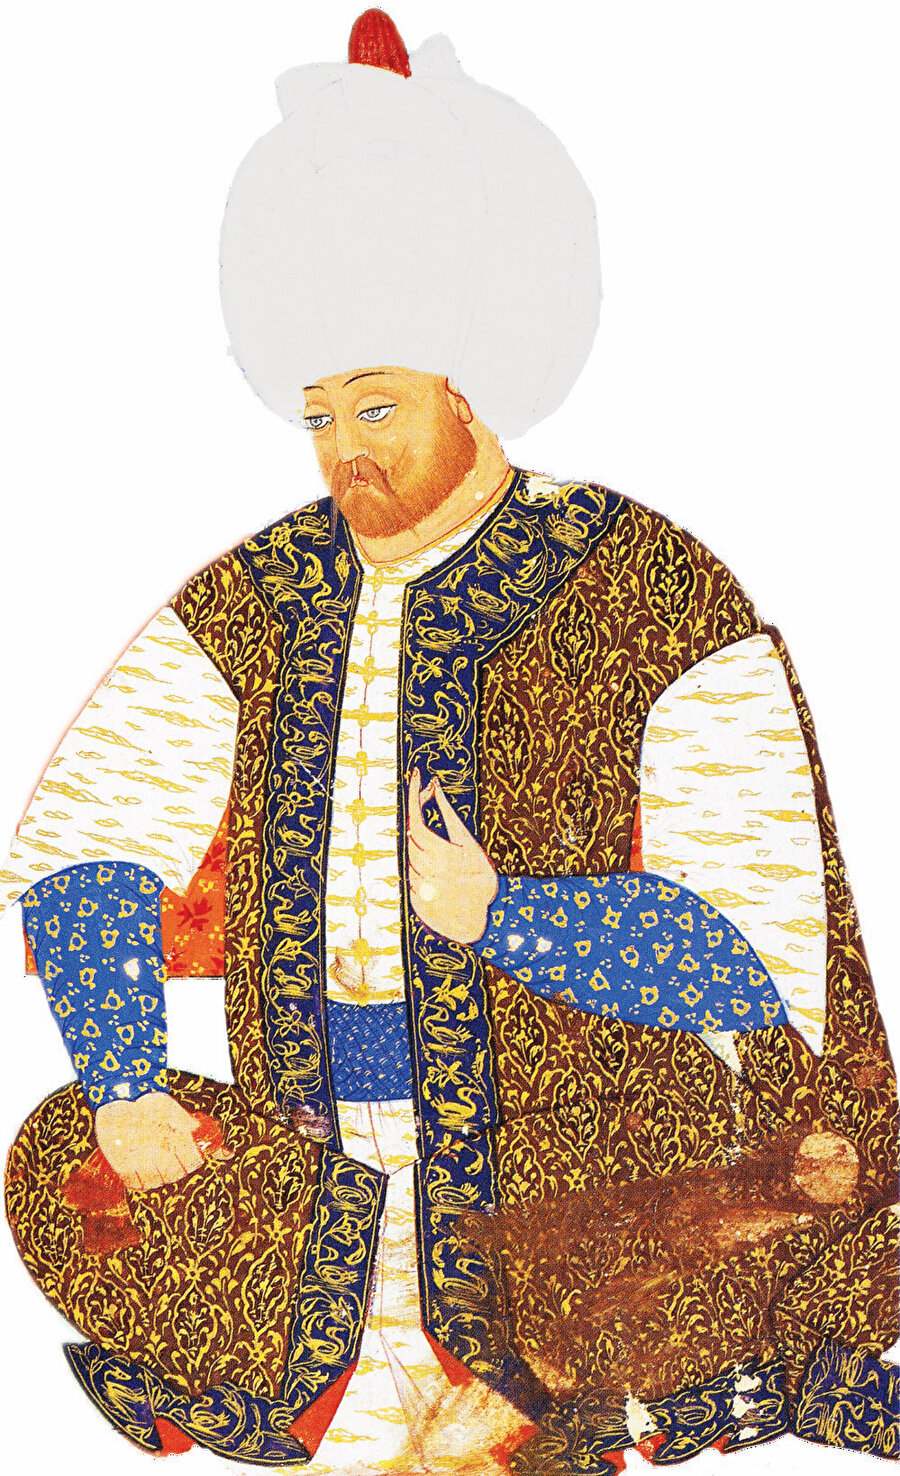 » Âlicenap bir hükümdar: Sultan II. Selim, etrafında her zaman âlim ve şairlerin bulunmasını ister, onlara karşı çok cömert davranarak çeşitli ihsanlarda bulunurdu. Solda Nakkaş Osman’ın Şemâ’ilnâme adlı eserinde bulunan bir II. Selim portresi. 